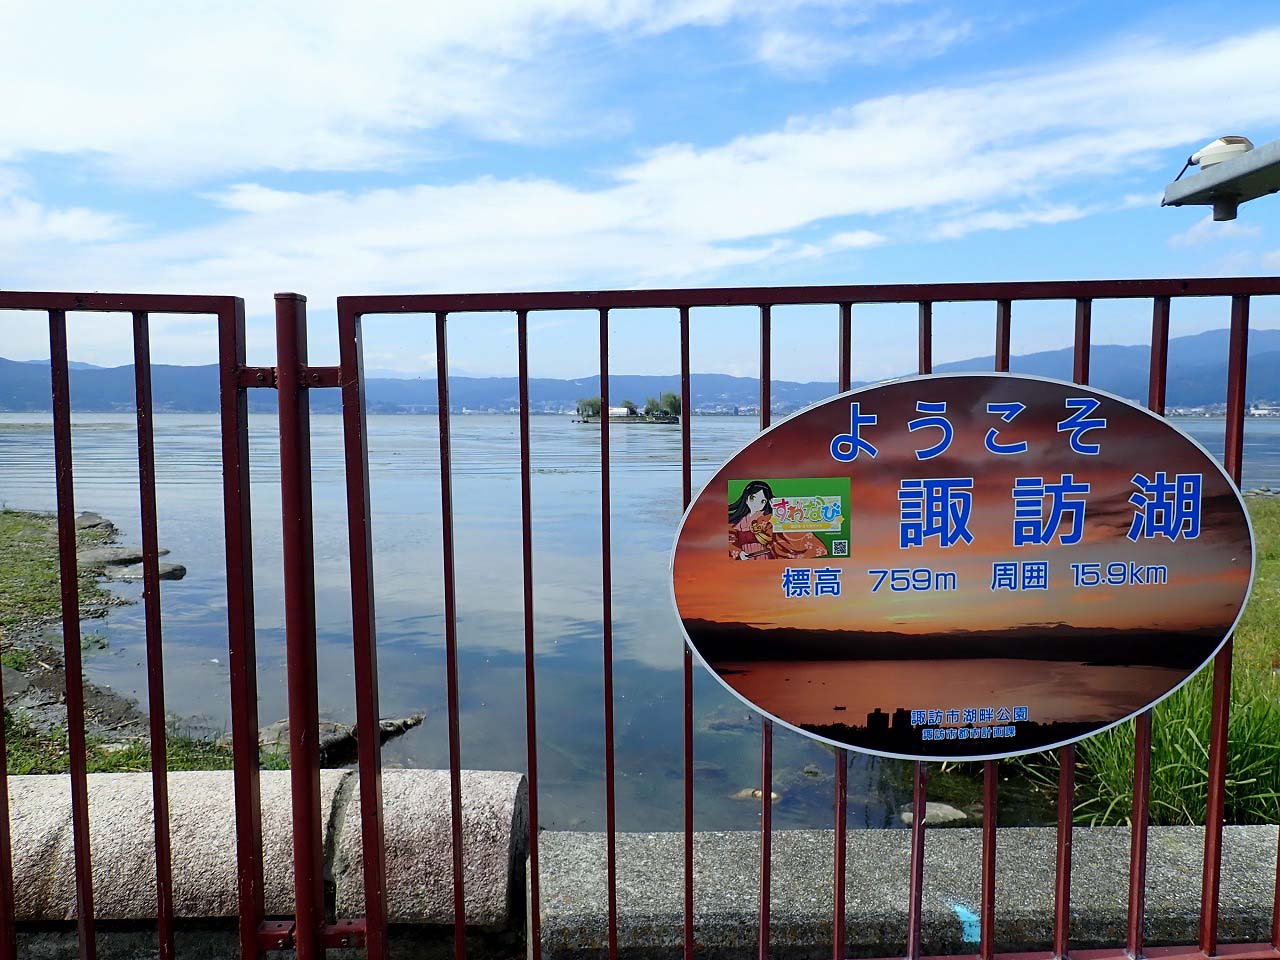 釣り場紹介 諏訪湖 長野県 でワカサギを釣ります 相模湖最新情報も有 釣りとバイクが趣味なんだ